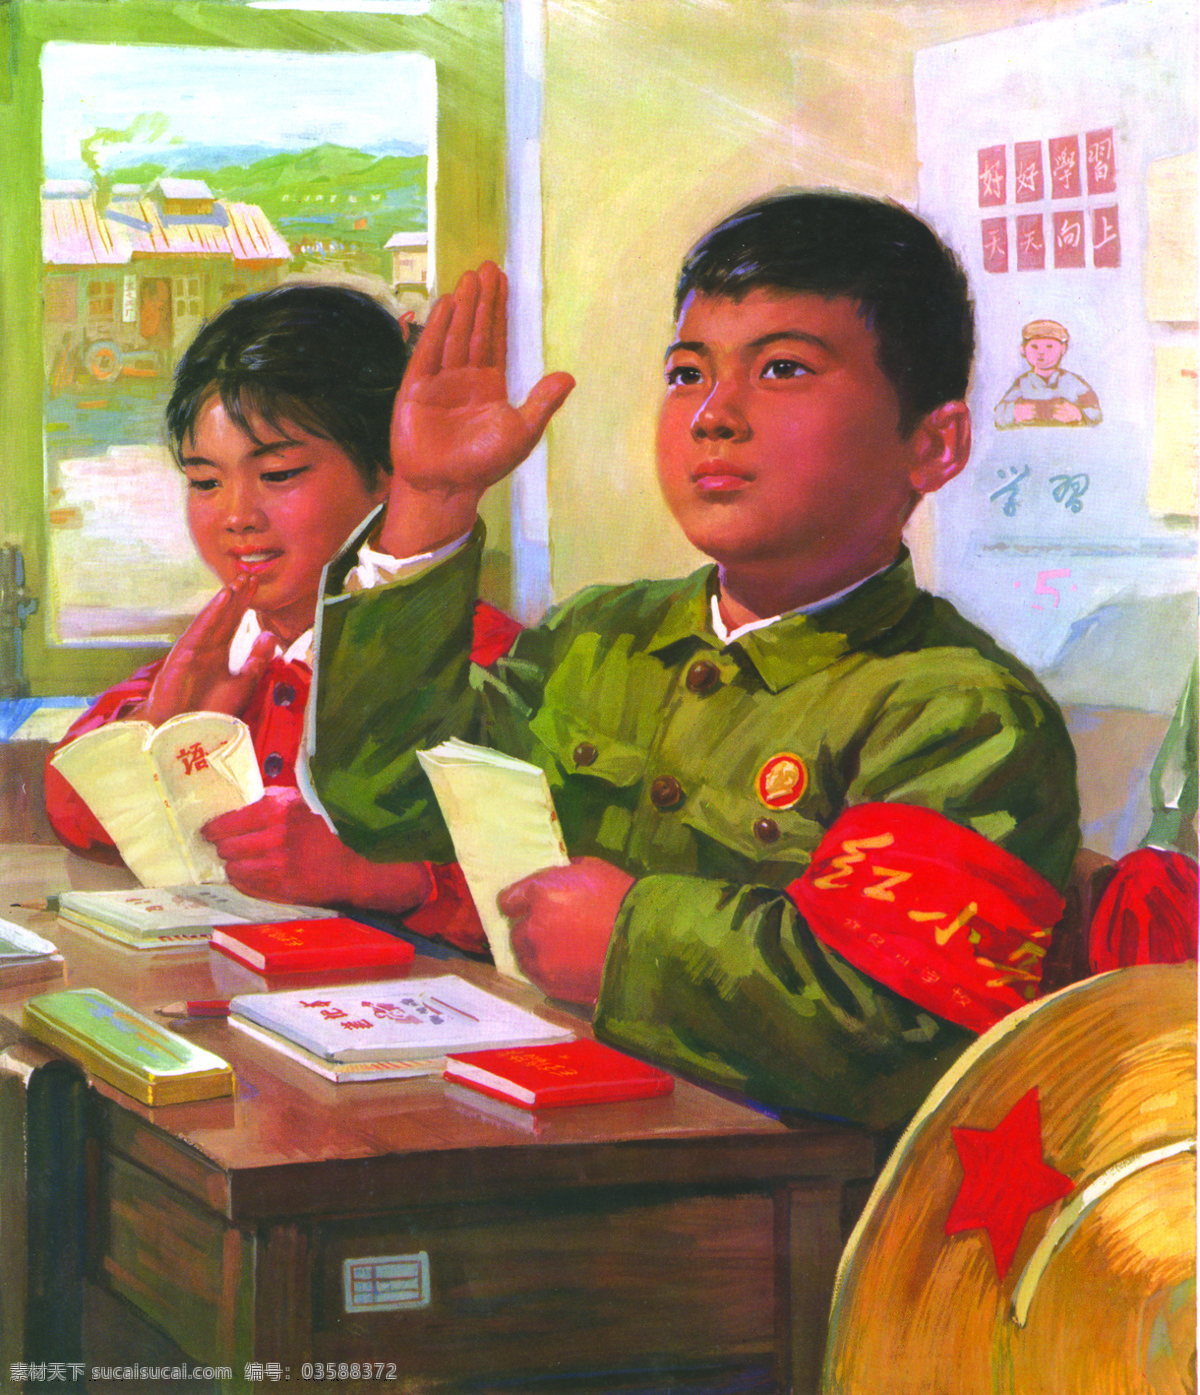 珍藏版 文革 时期 宣传画 儿童 学习 旧海报 红小兵 其他海报设计